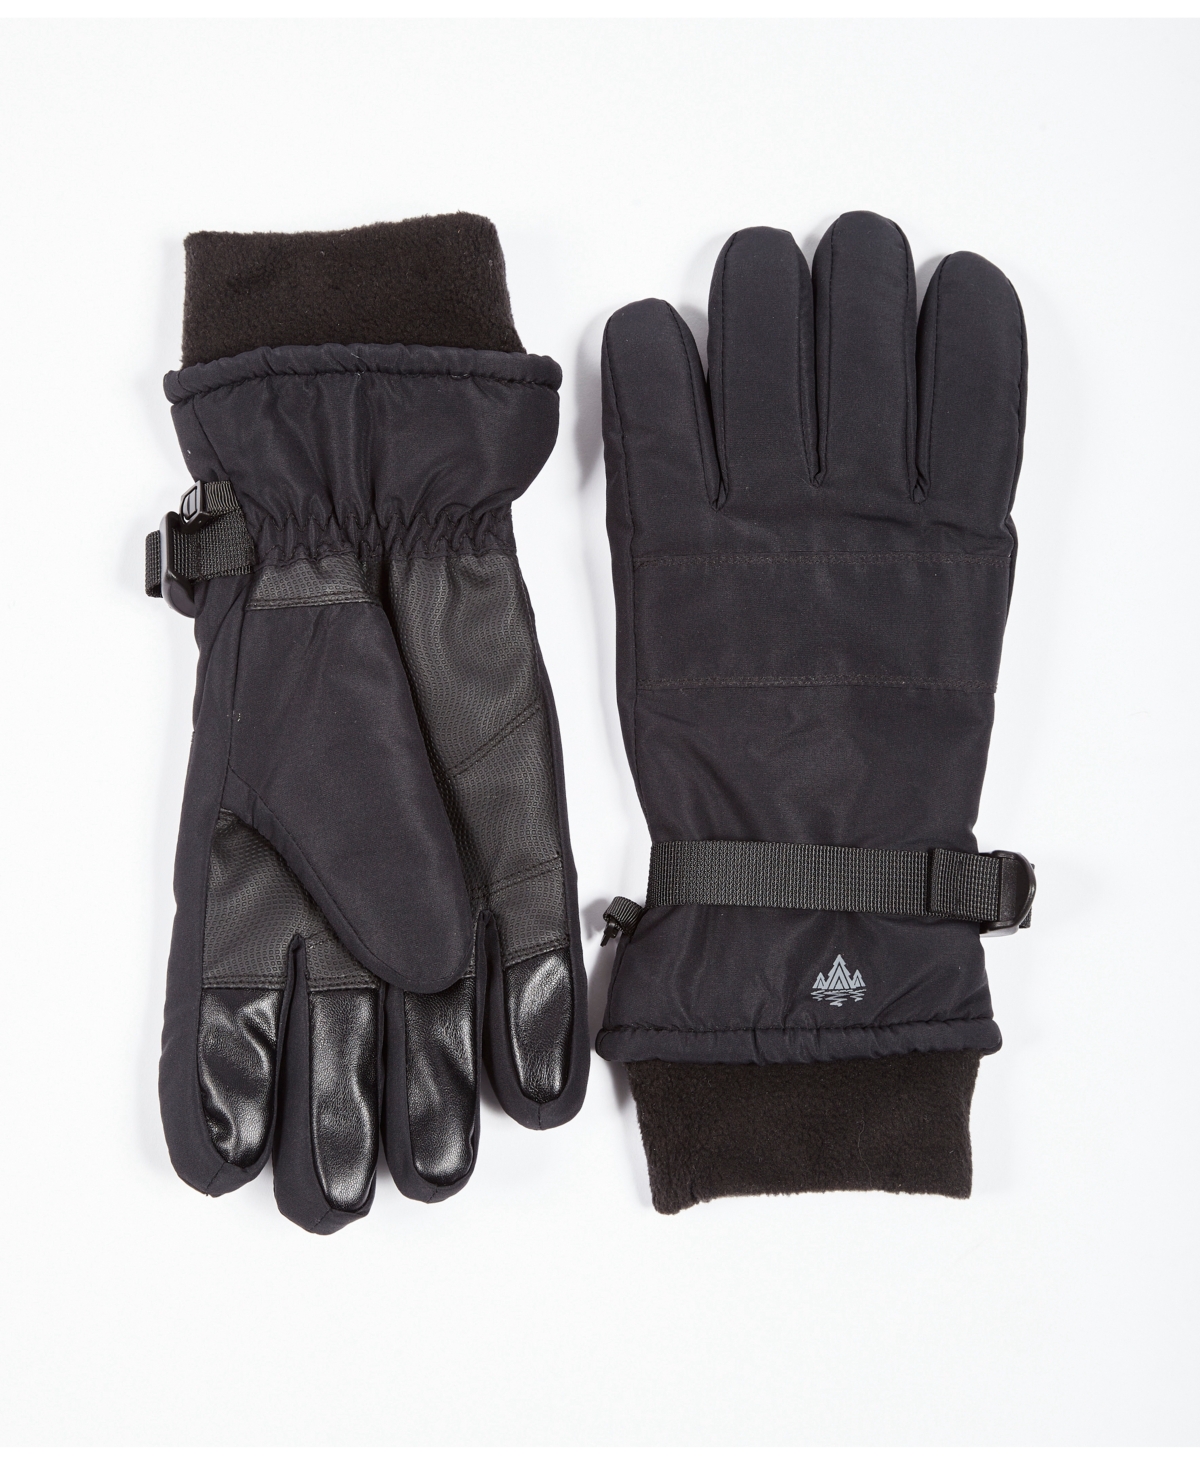 Rainforest Men's Ski Gloves With Cuff In Black